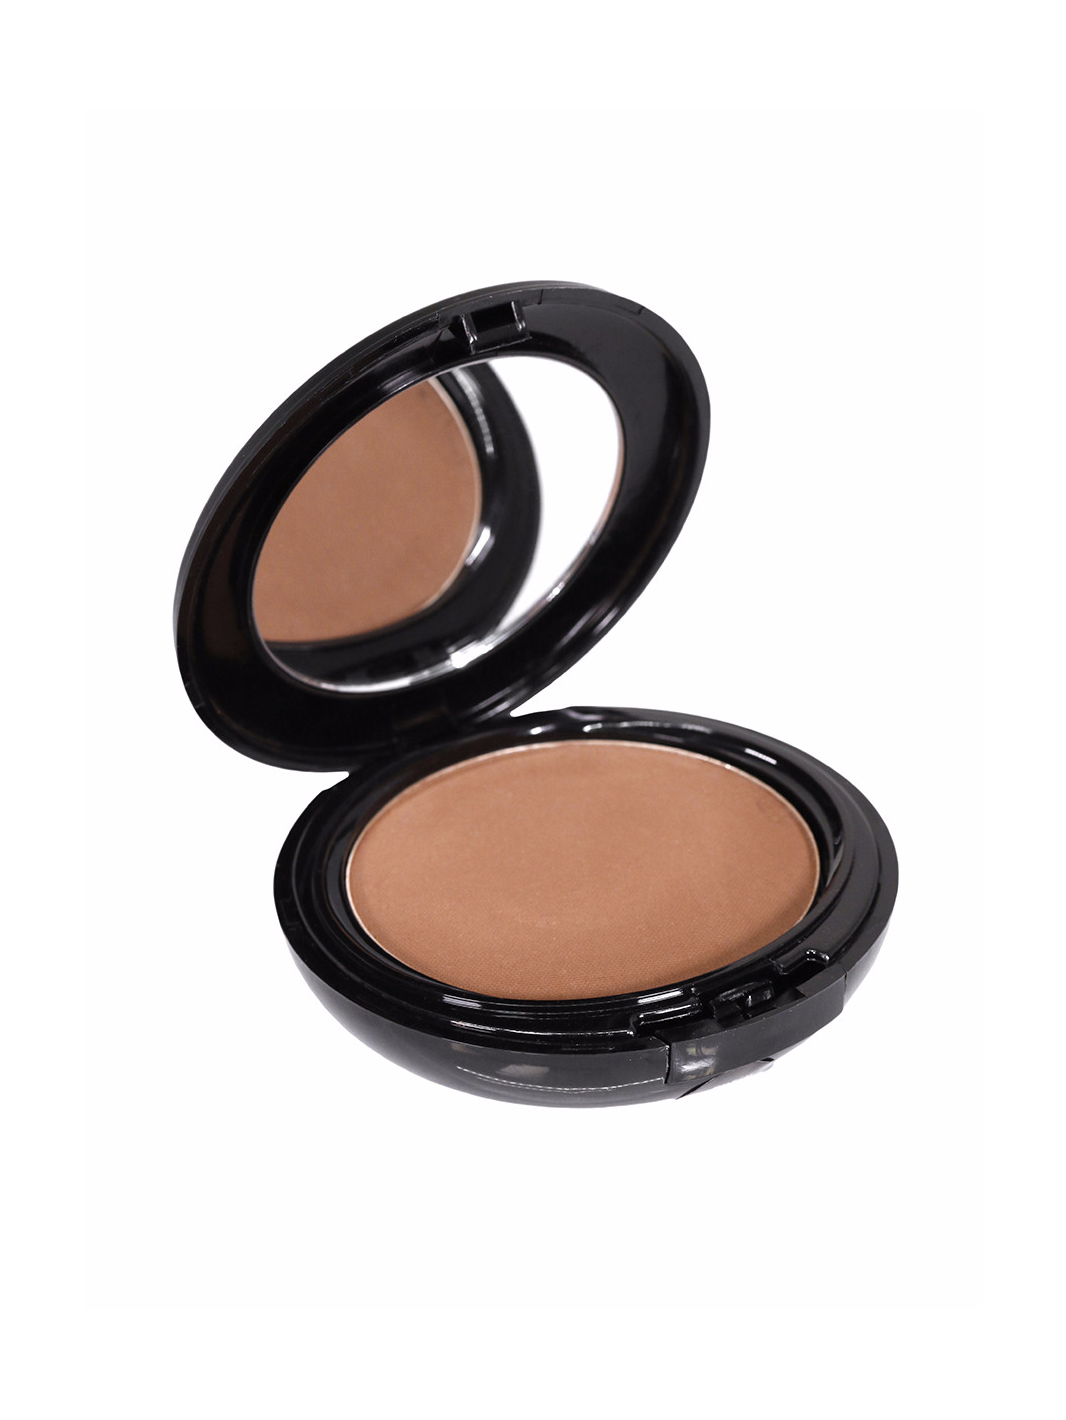 Men's bronze powder compact makeup with mirror